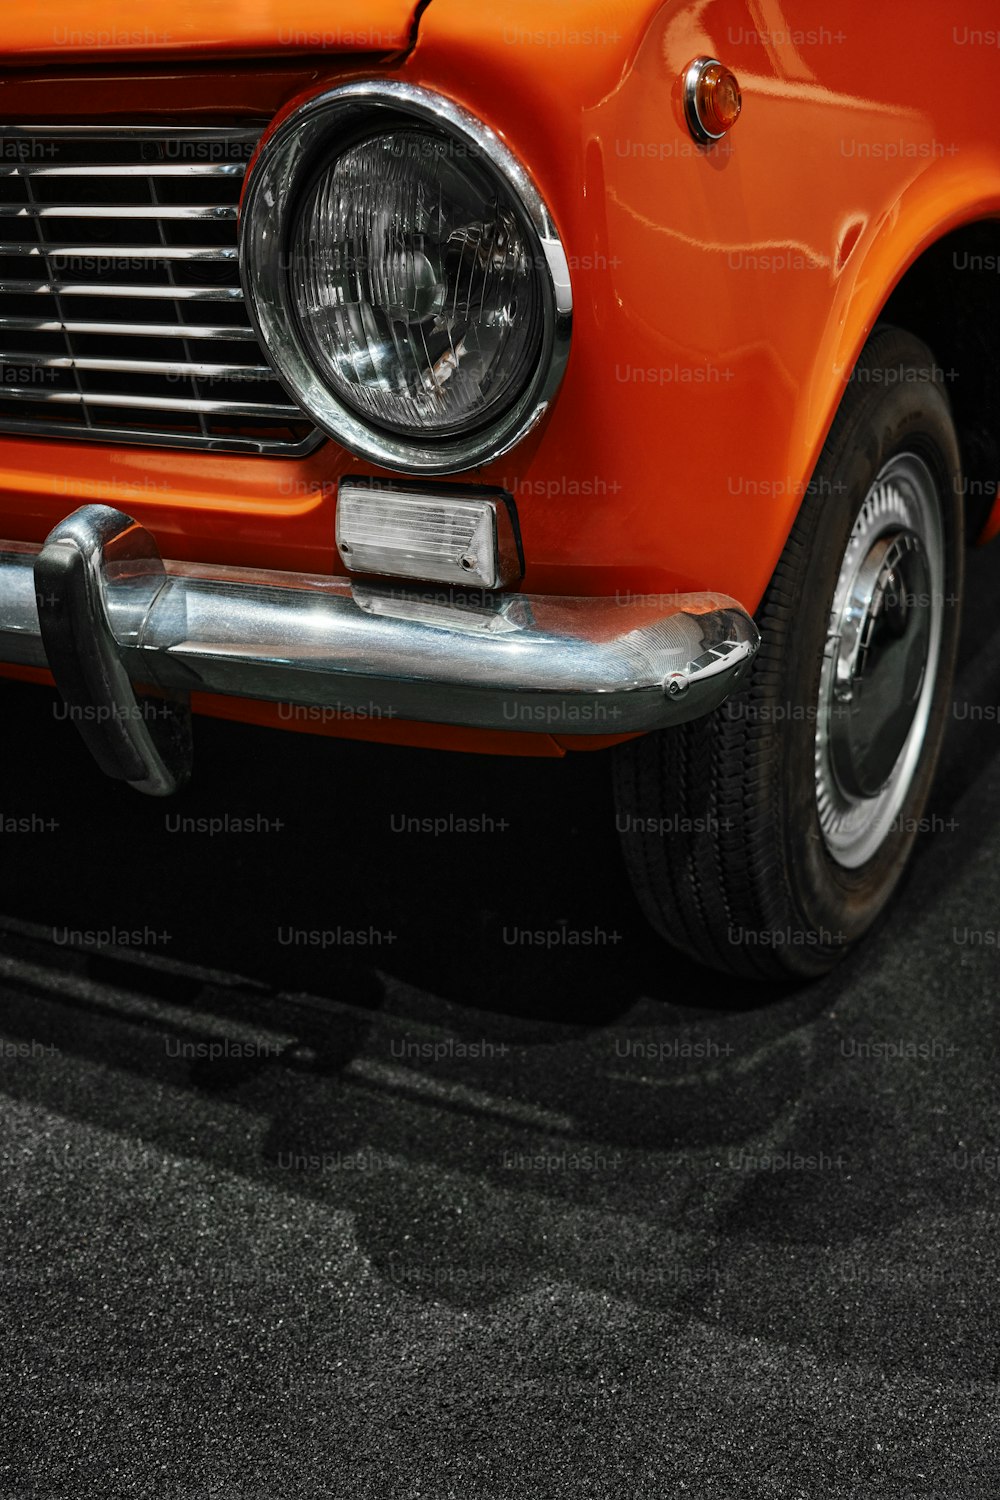 a close up of an orange classic car